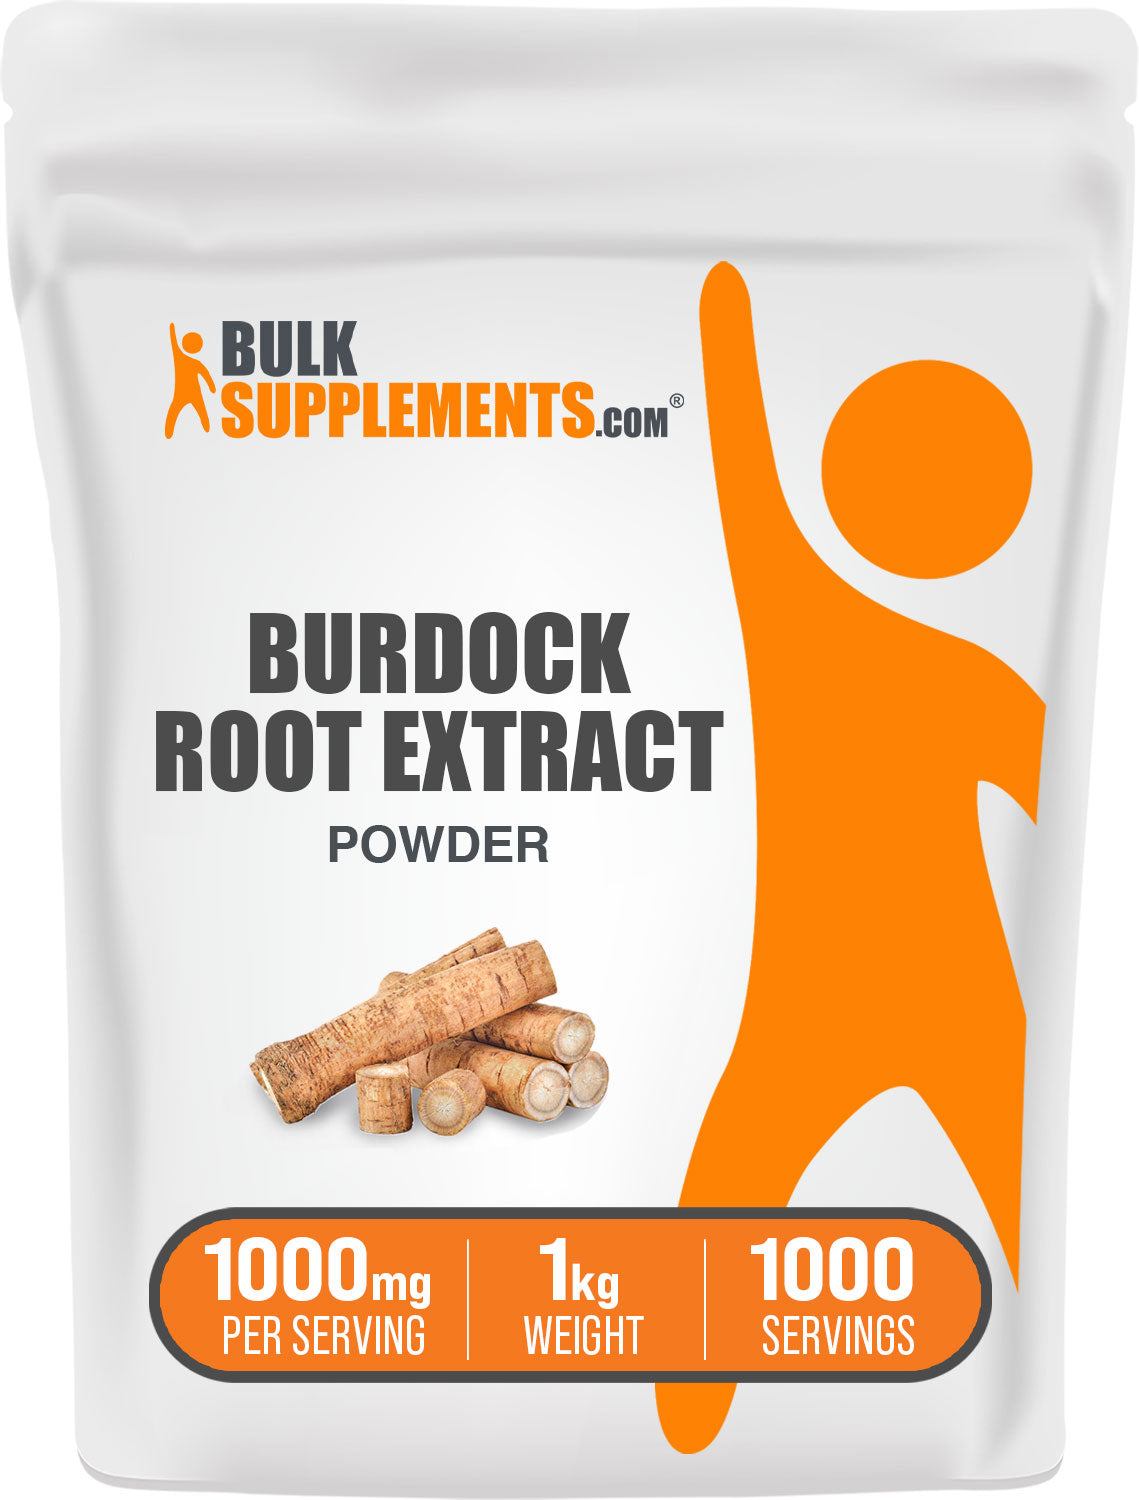 1kg of burdock root